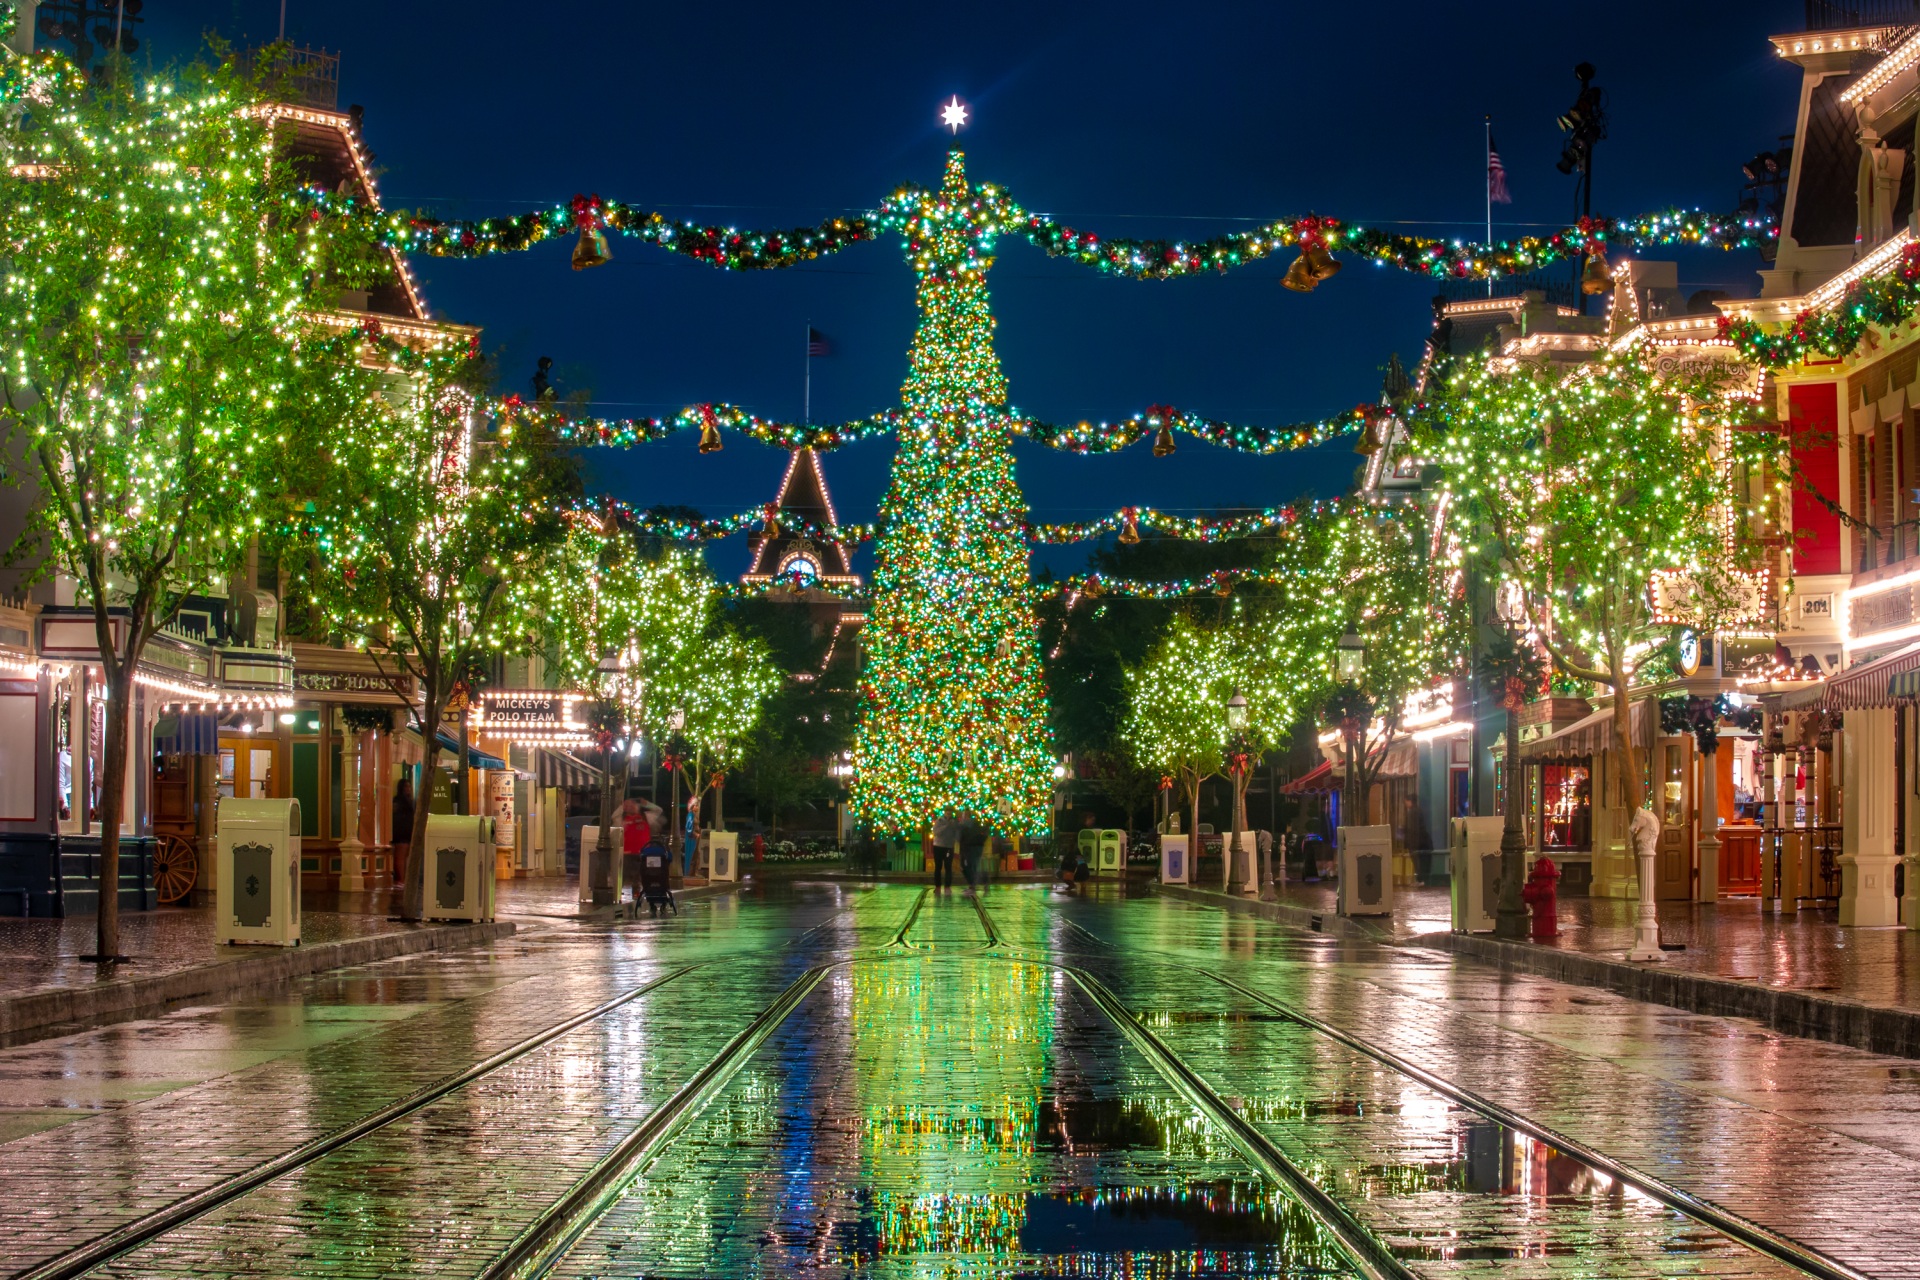 Download Disneyland California Christmas Lights Christmas Tree Holiday